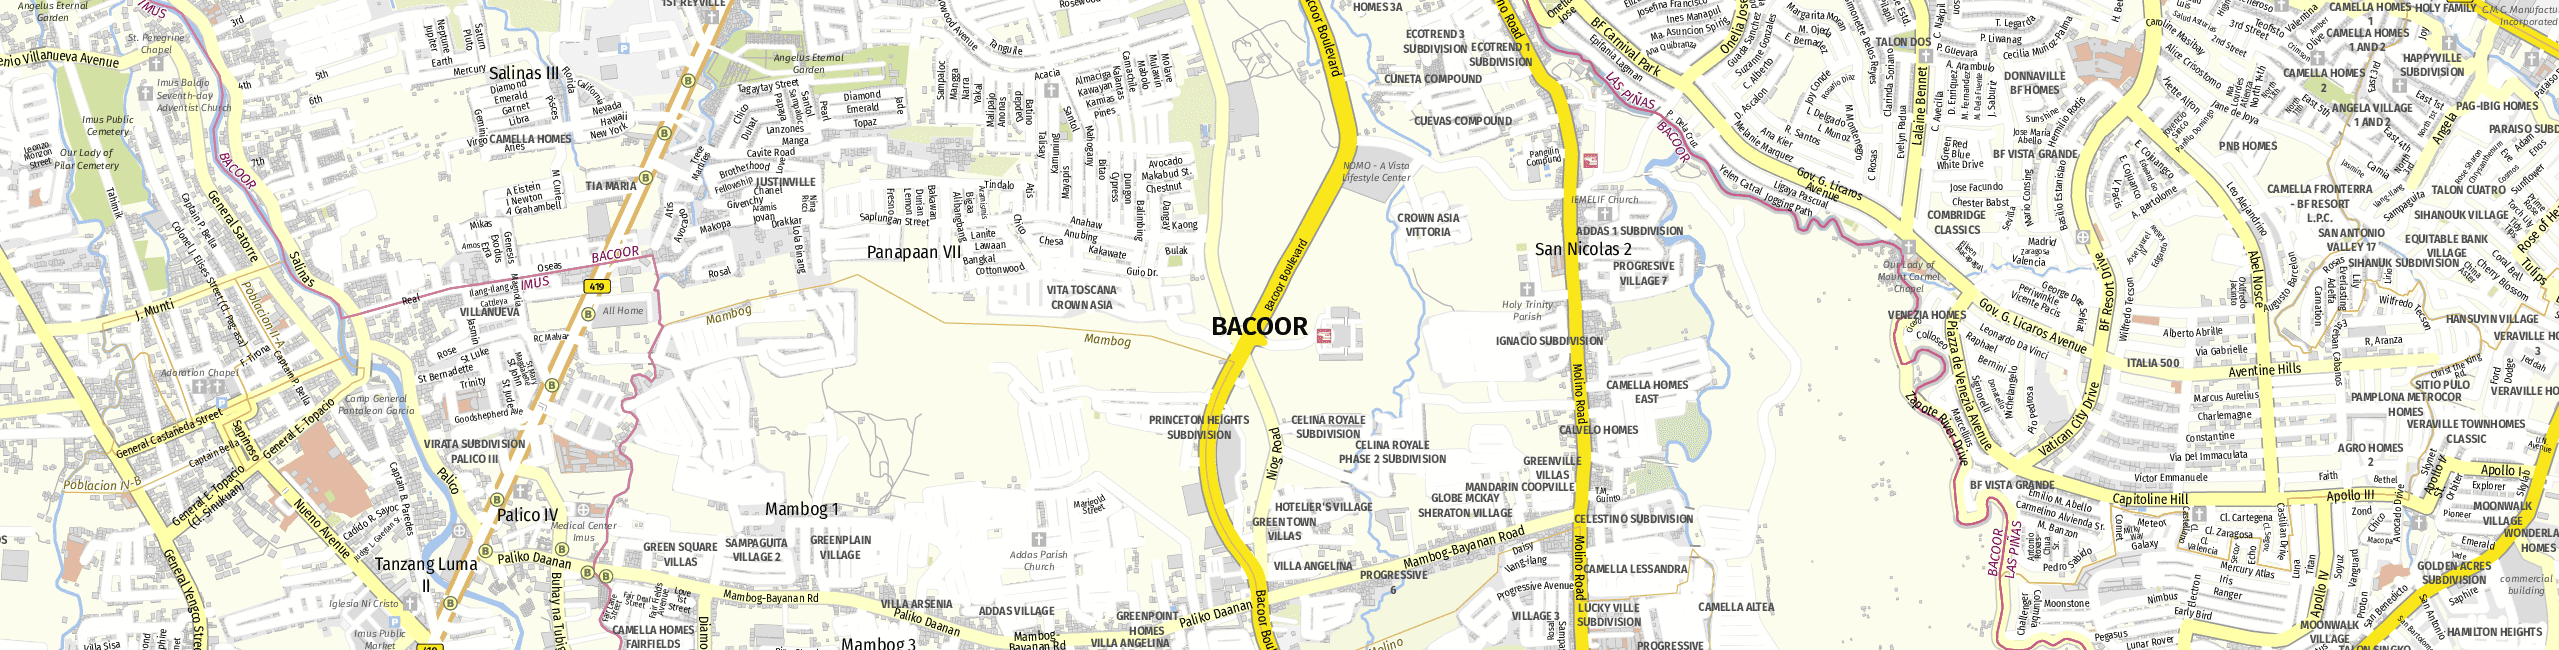 Stadtplan Bacoor zum Downloaden.